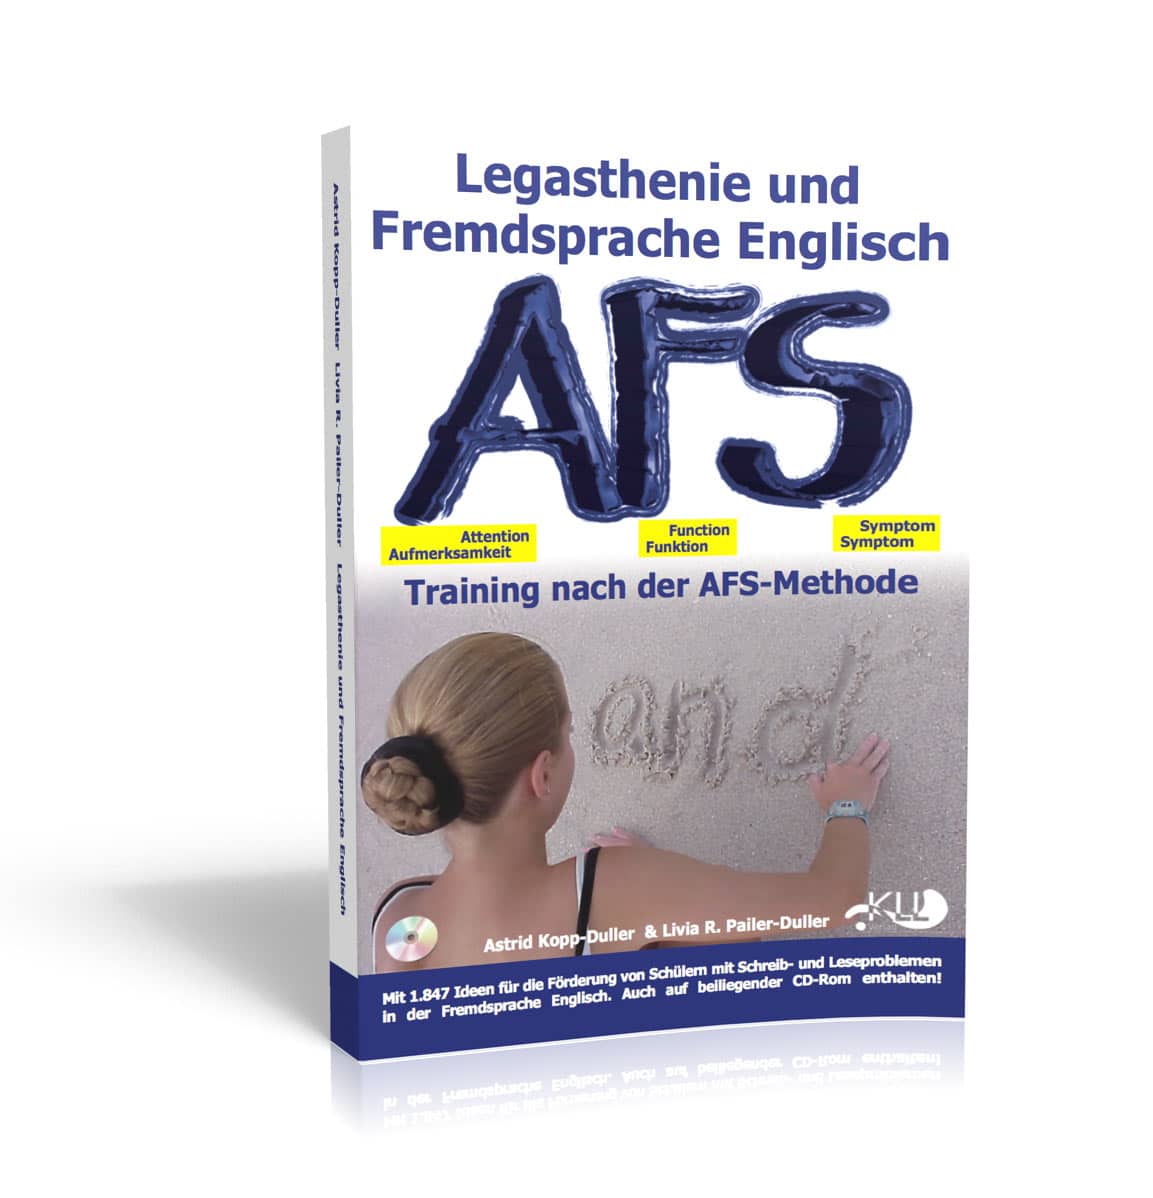 Englisch, Legasthenie, AFS-Methode, AFS-Training, Hilfe, Eltern, Kinder, Lehrer, Schule, Fremdsprache